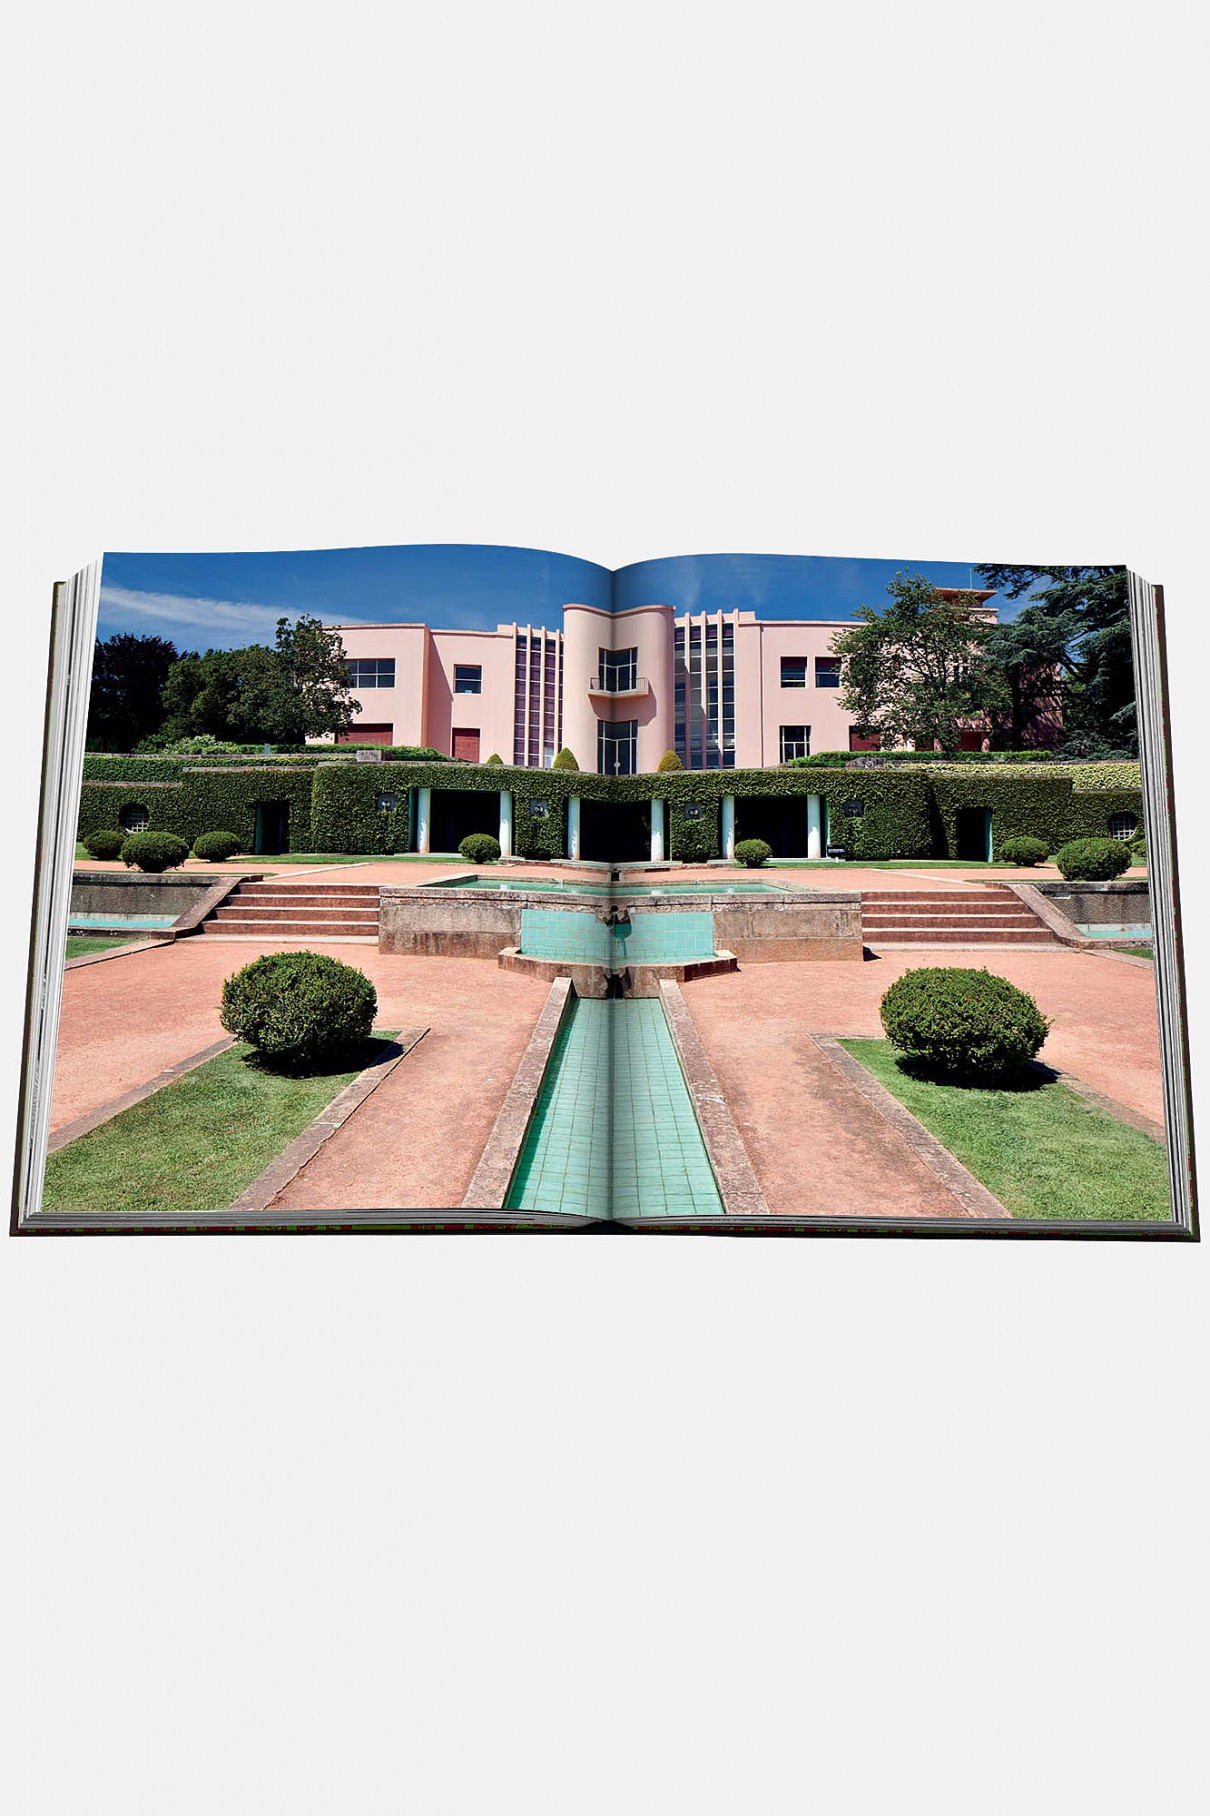 Книгa Assouline Travel Art Deco Style ,  арт. 9781649800220 купить в интернет-магазине